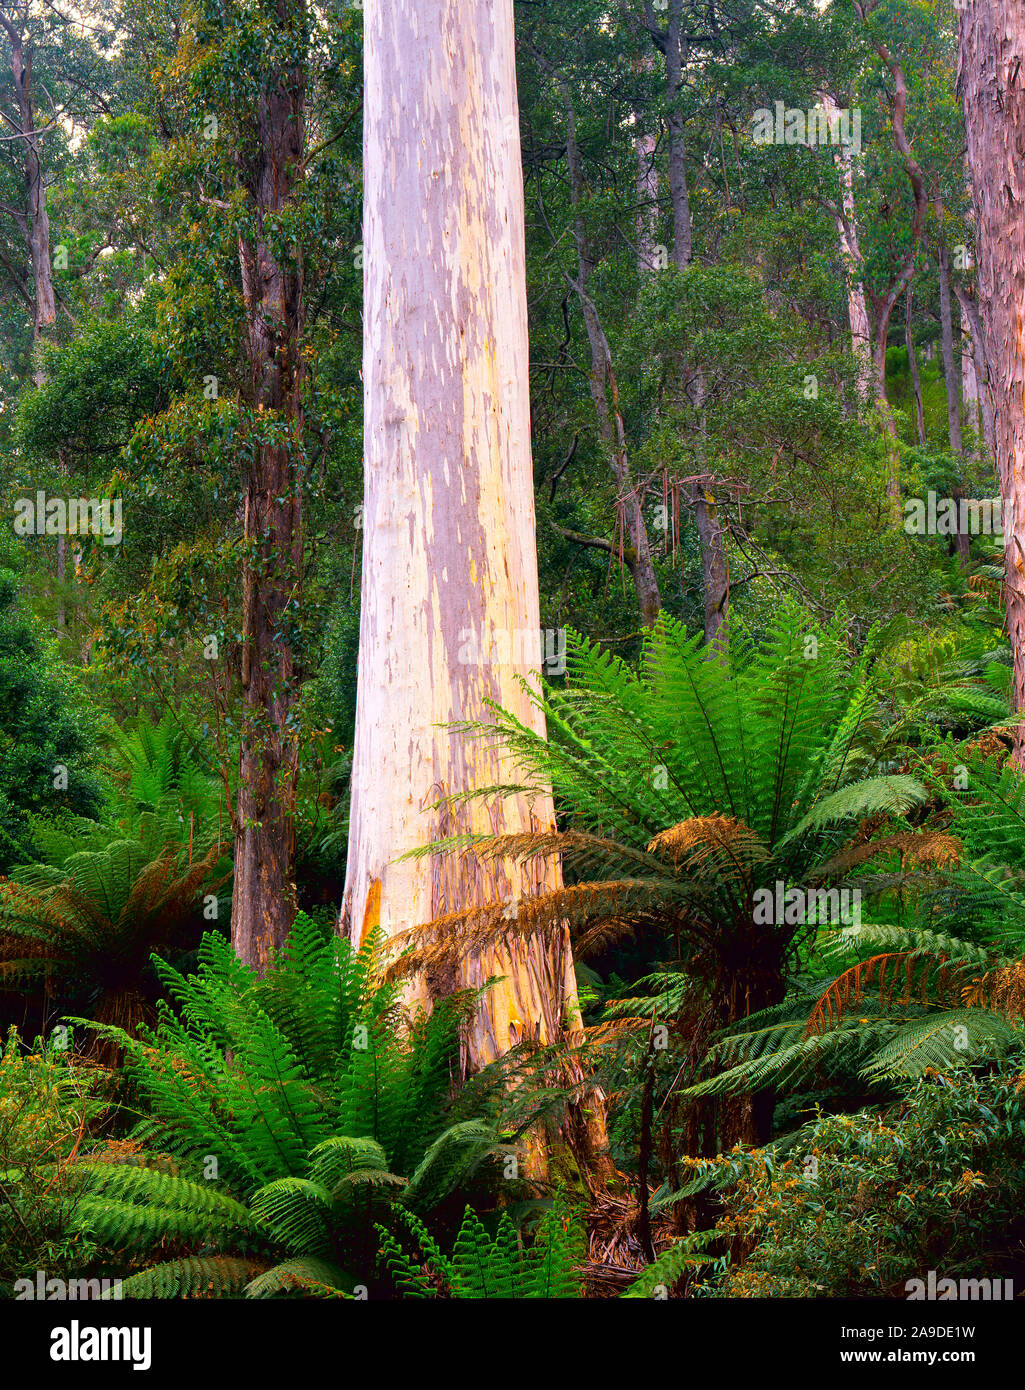 Lila blanc géant en forêt Evercreech Réserver, Tasmanie, Australie, Remnan forest enregistrés pour la gomme blanche énorme Banque D'Images